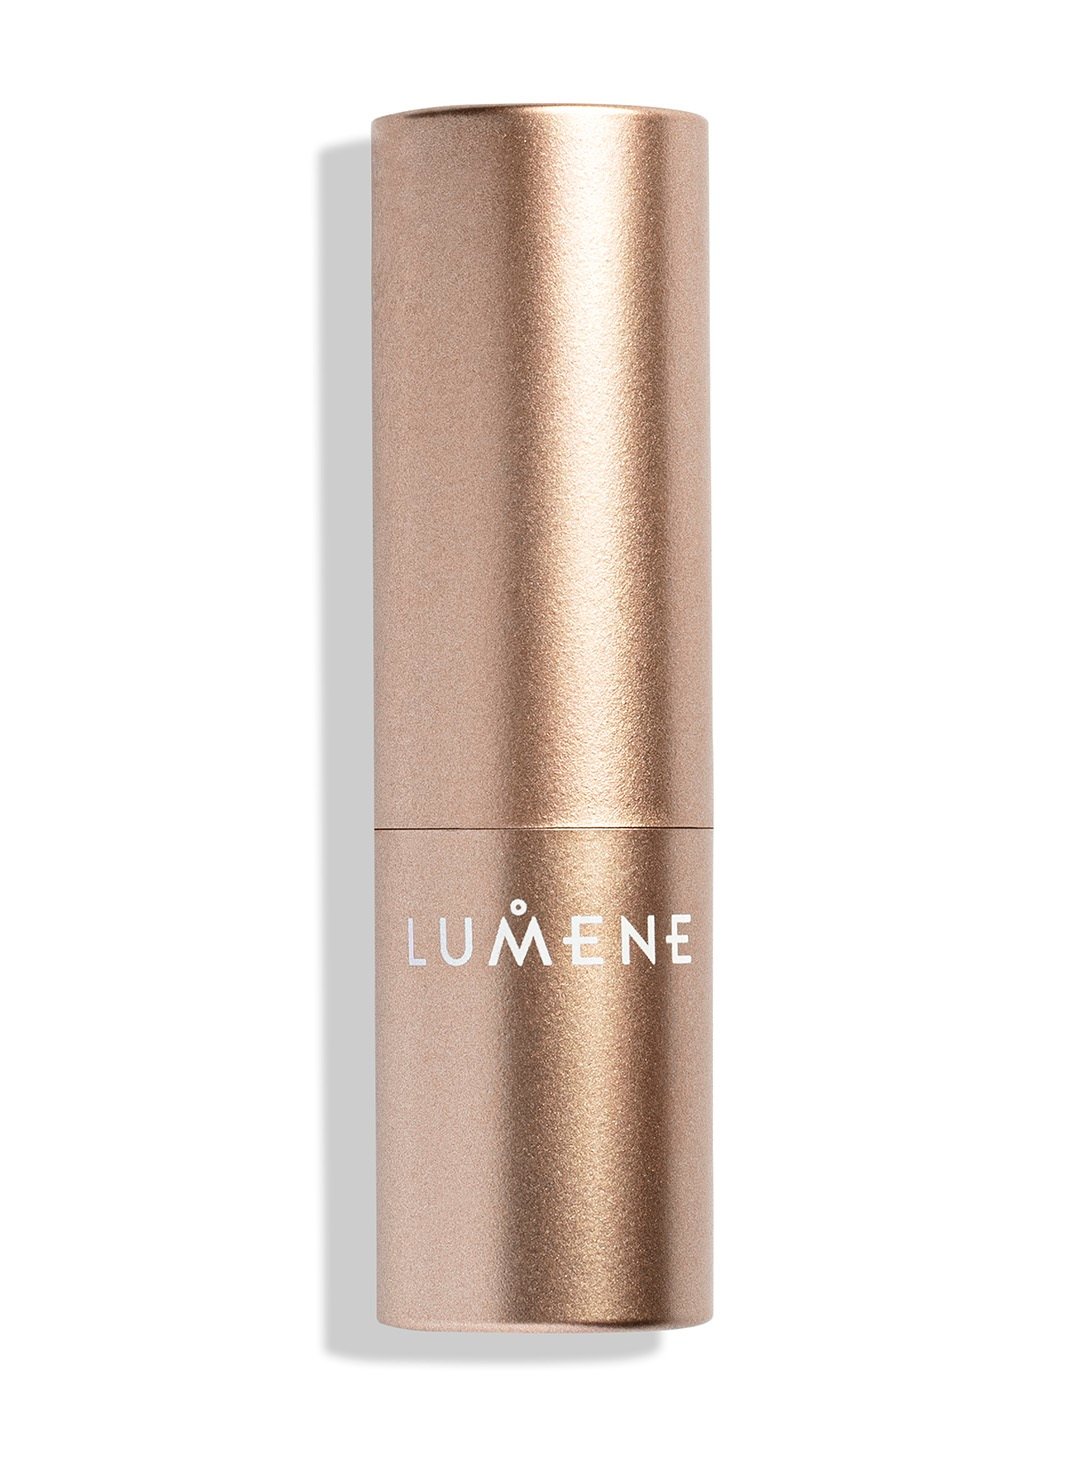 Зволожуюча помада з матовим ефектом Lumene Luminous, відтінок 105 (Wild Rose), 4.7 г (8000019685940) - фото 2